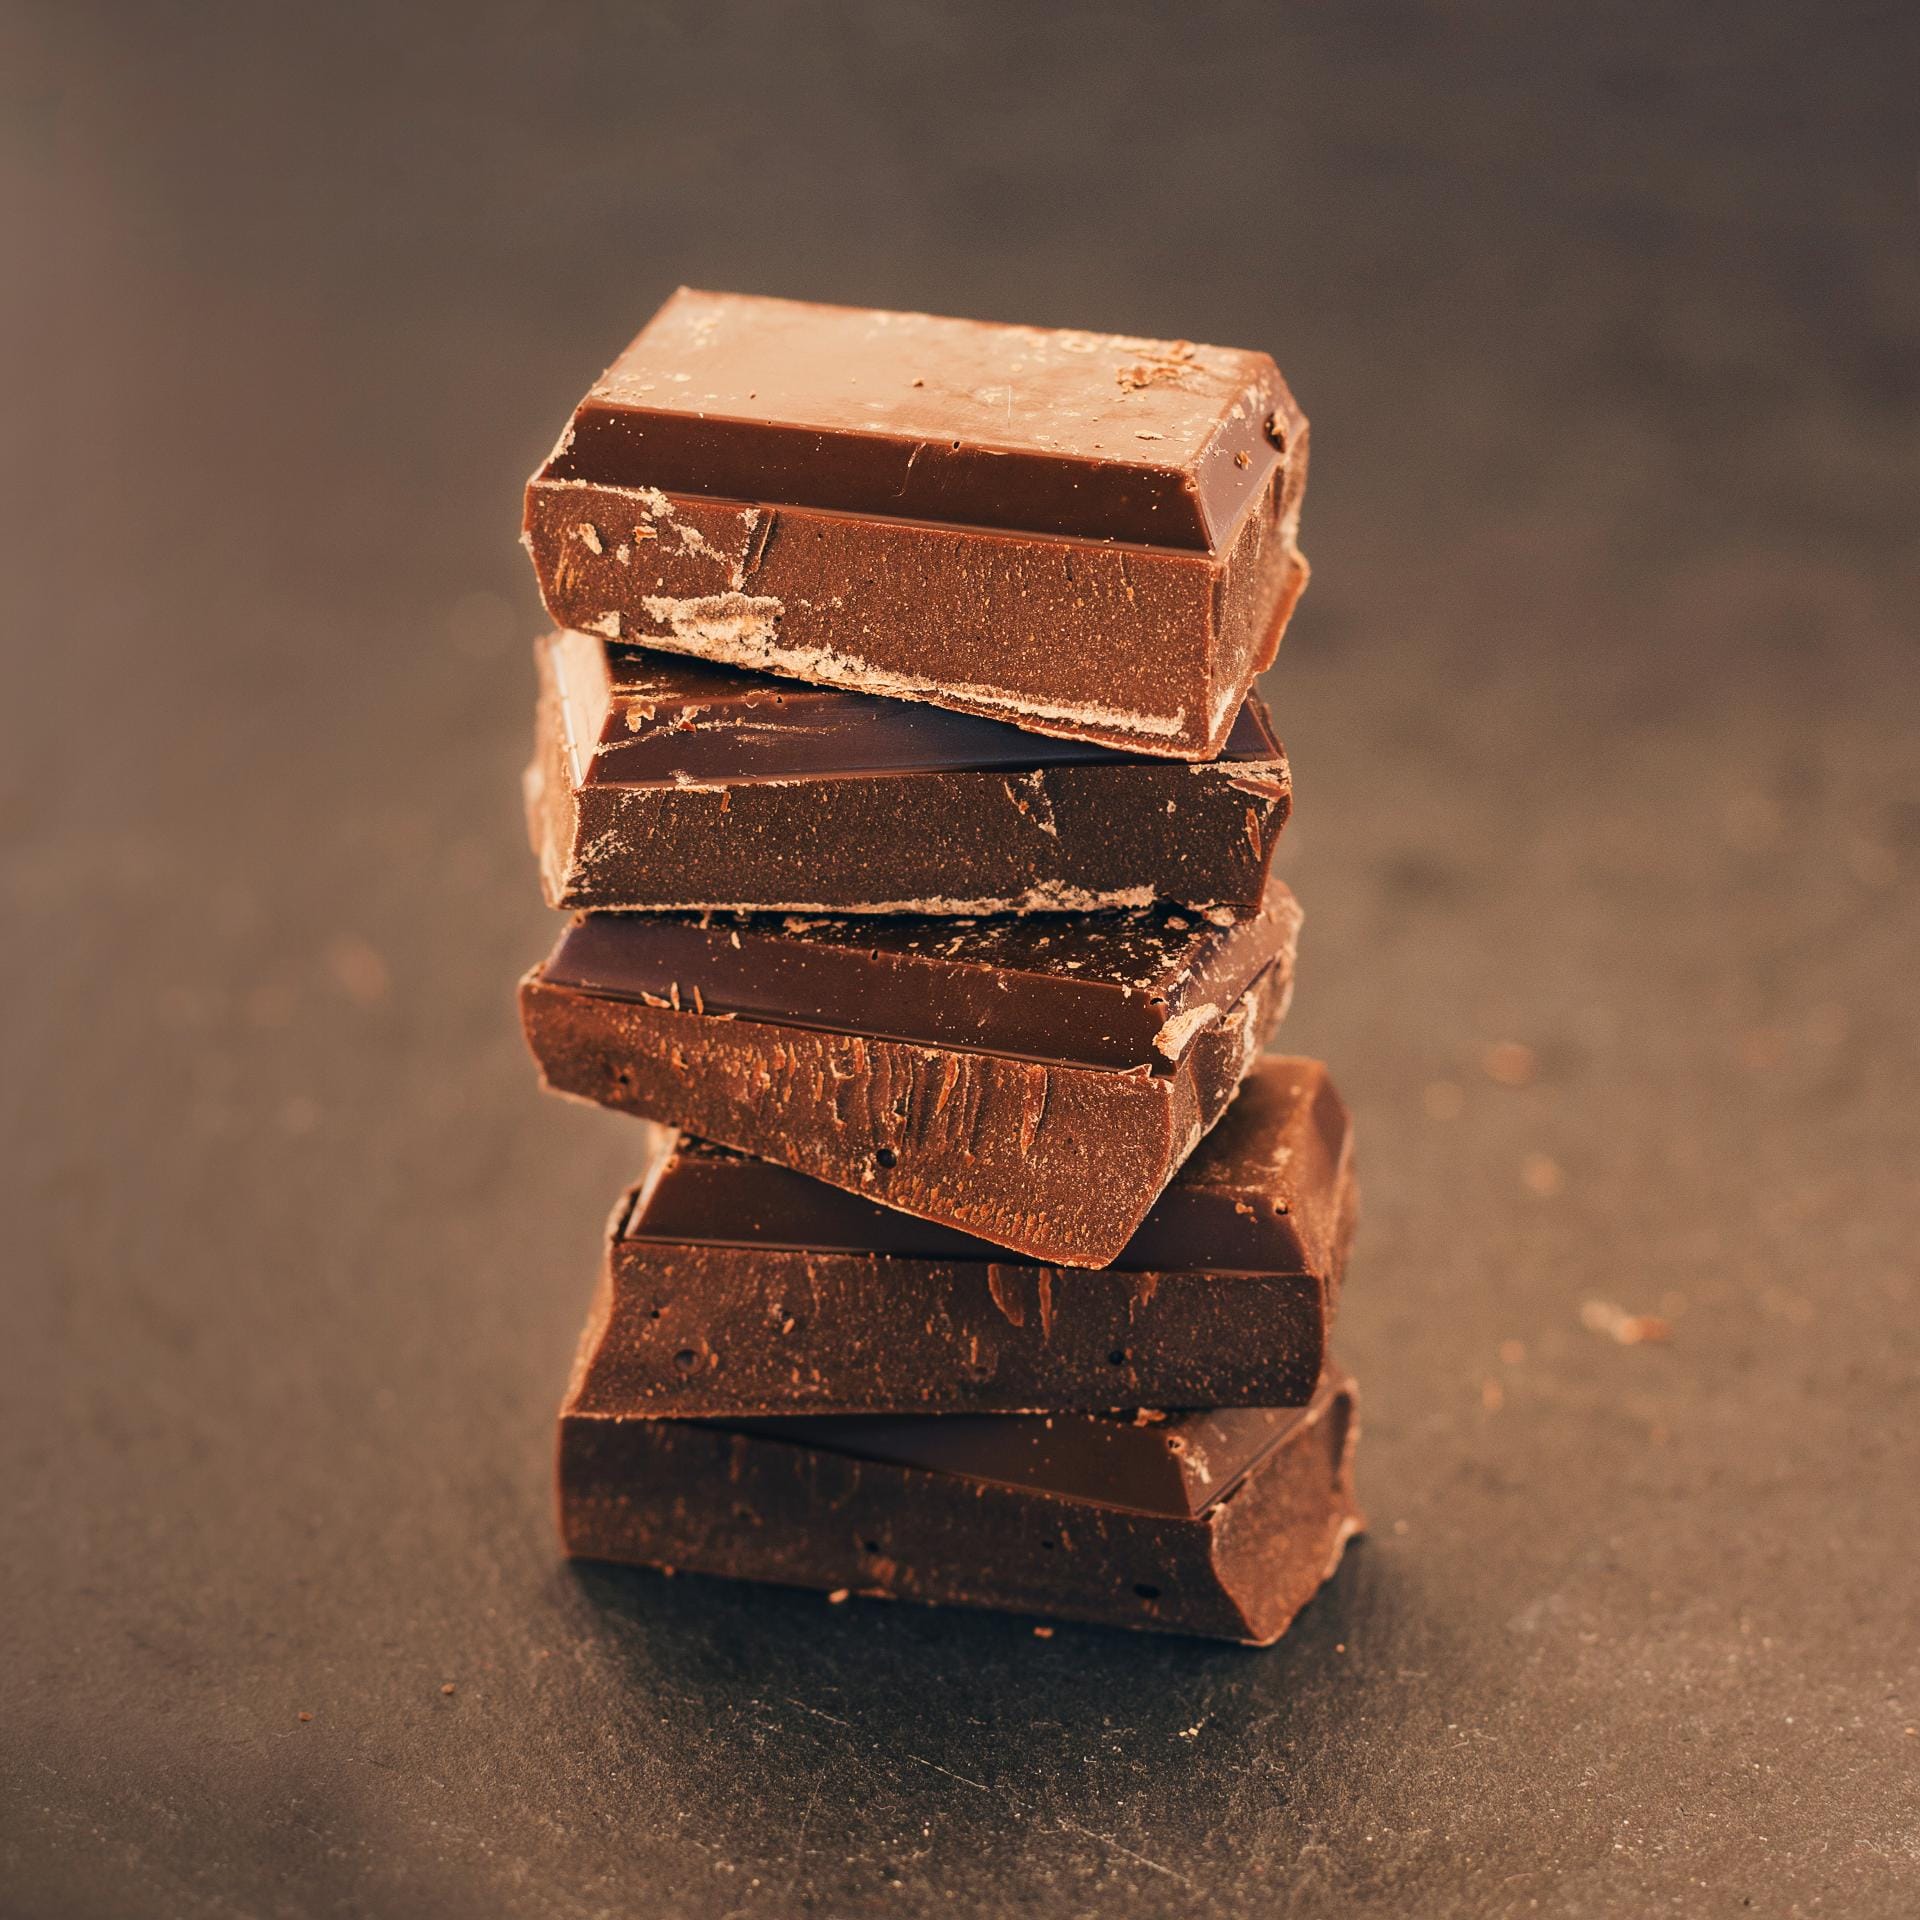 Schokolade, am besten dunkle, passt perfekt zum Whisky. Die Schokolade neutralisiert zudem den Gaumen während einer Verkostung.